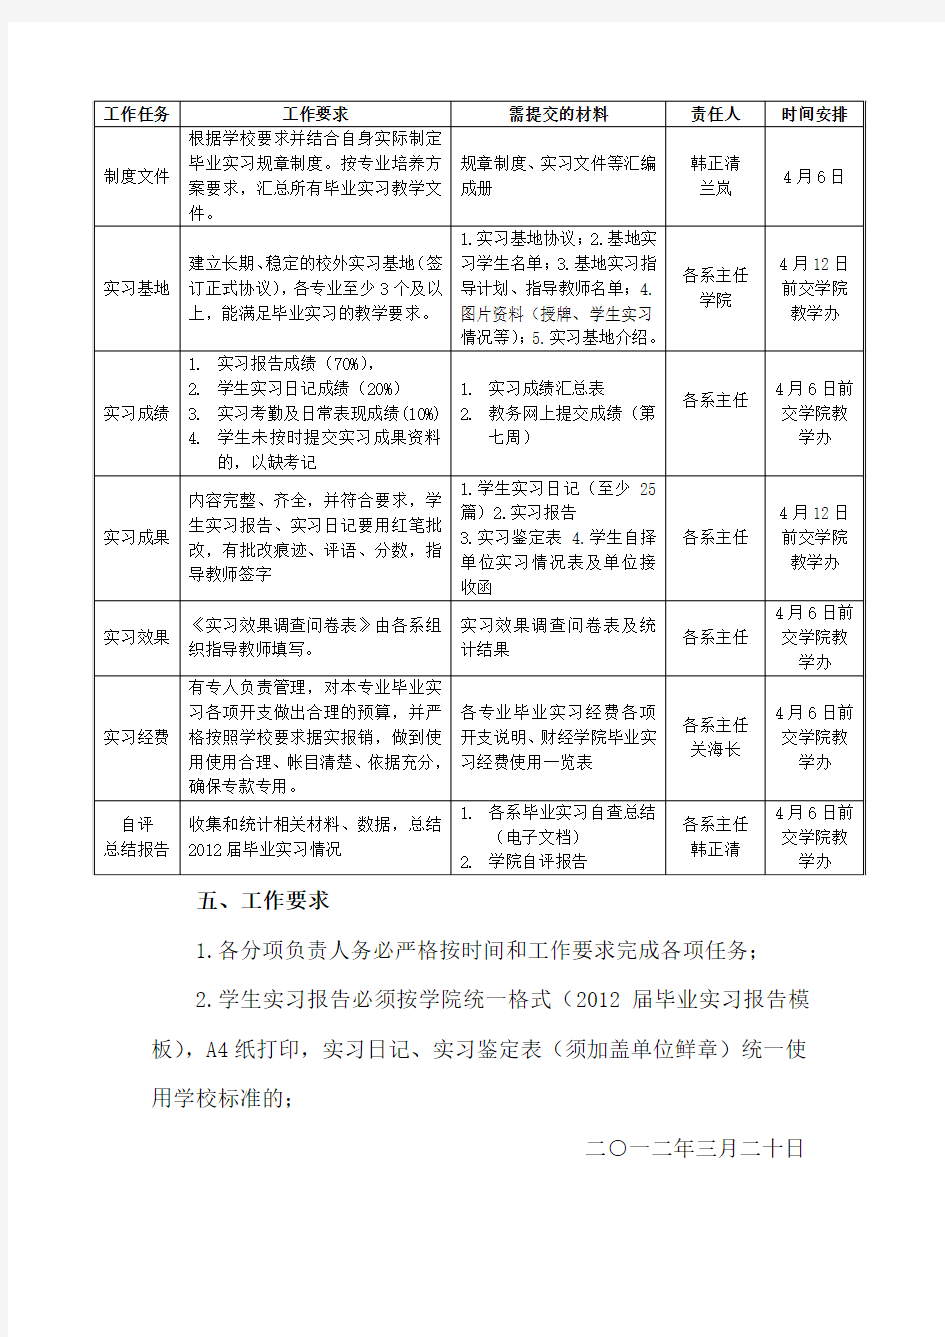 《重庆交通大学毕业实习报告》格式